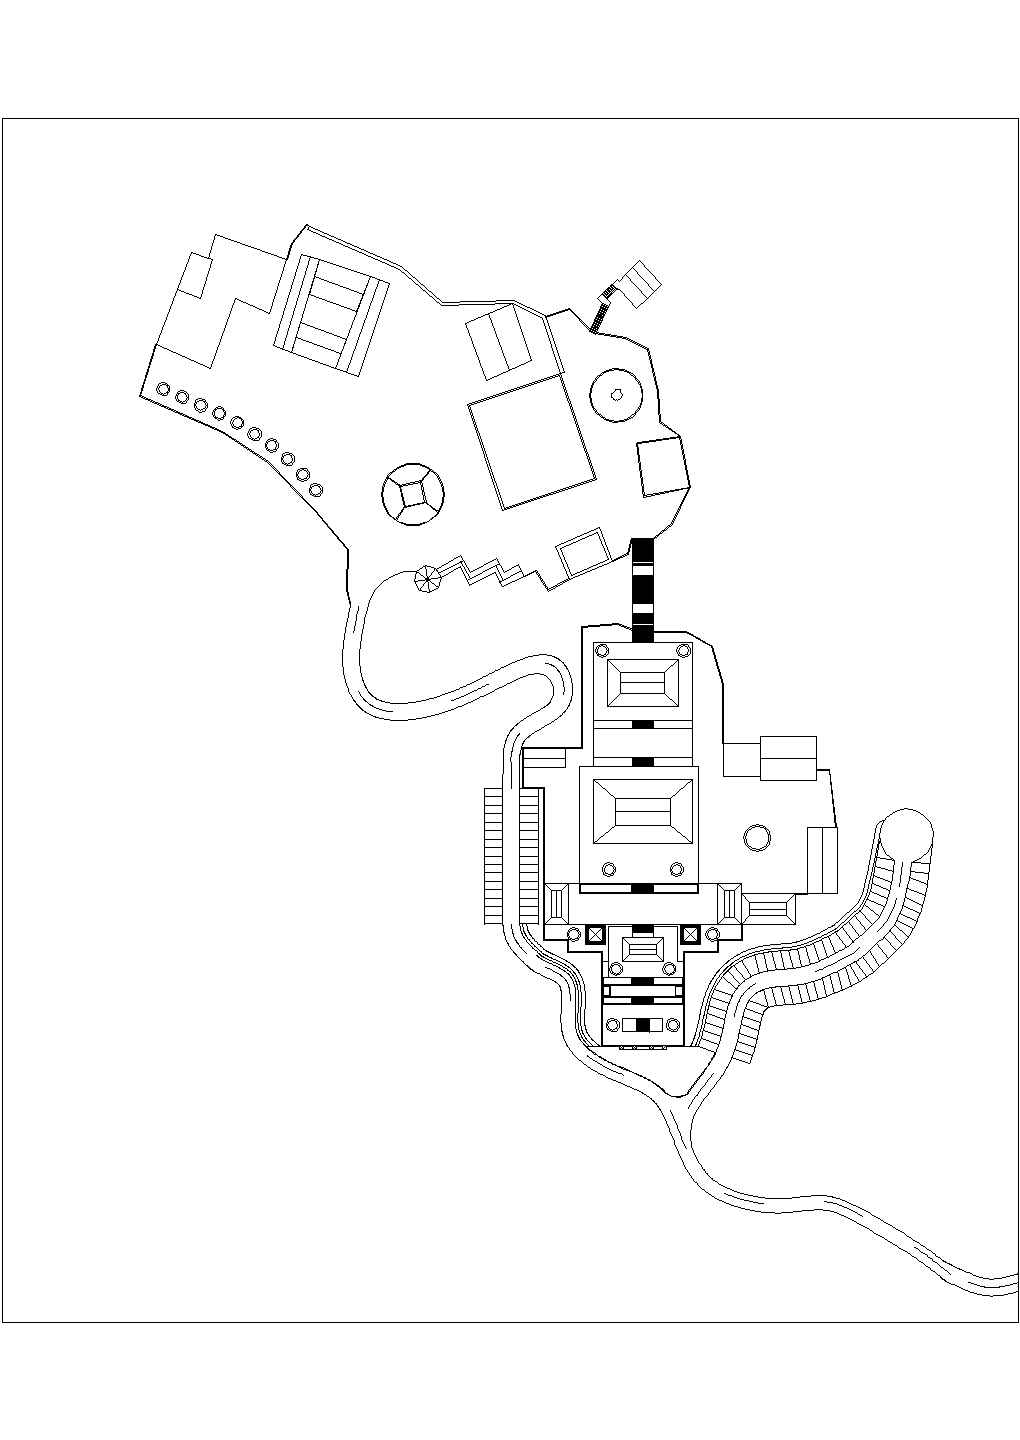 珠三角地区某寺庙规划设计平面规划设计图及效果